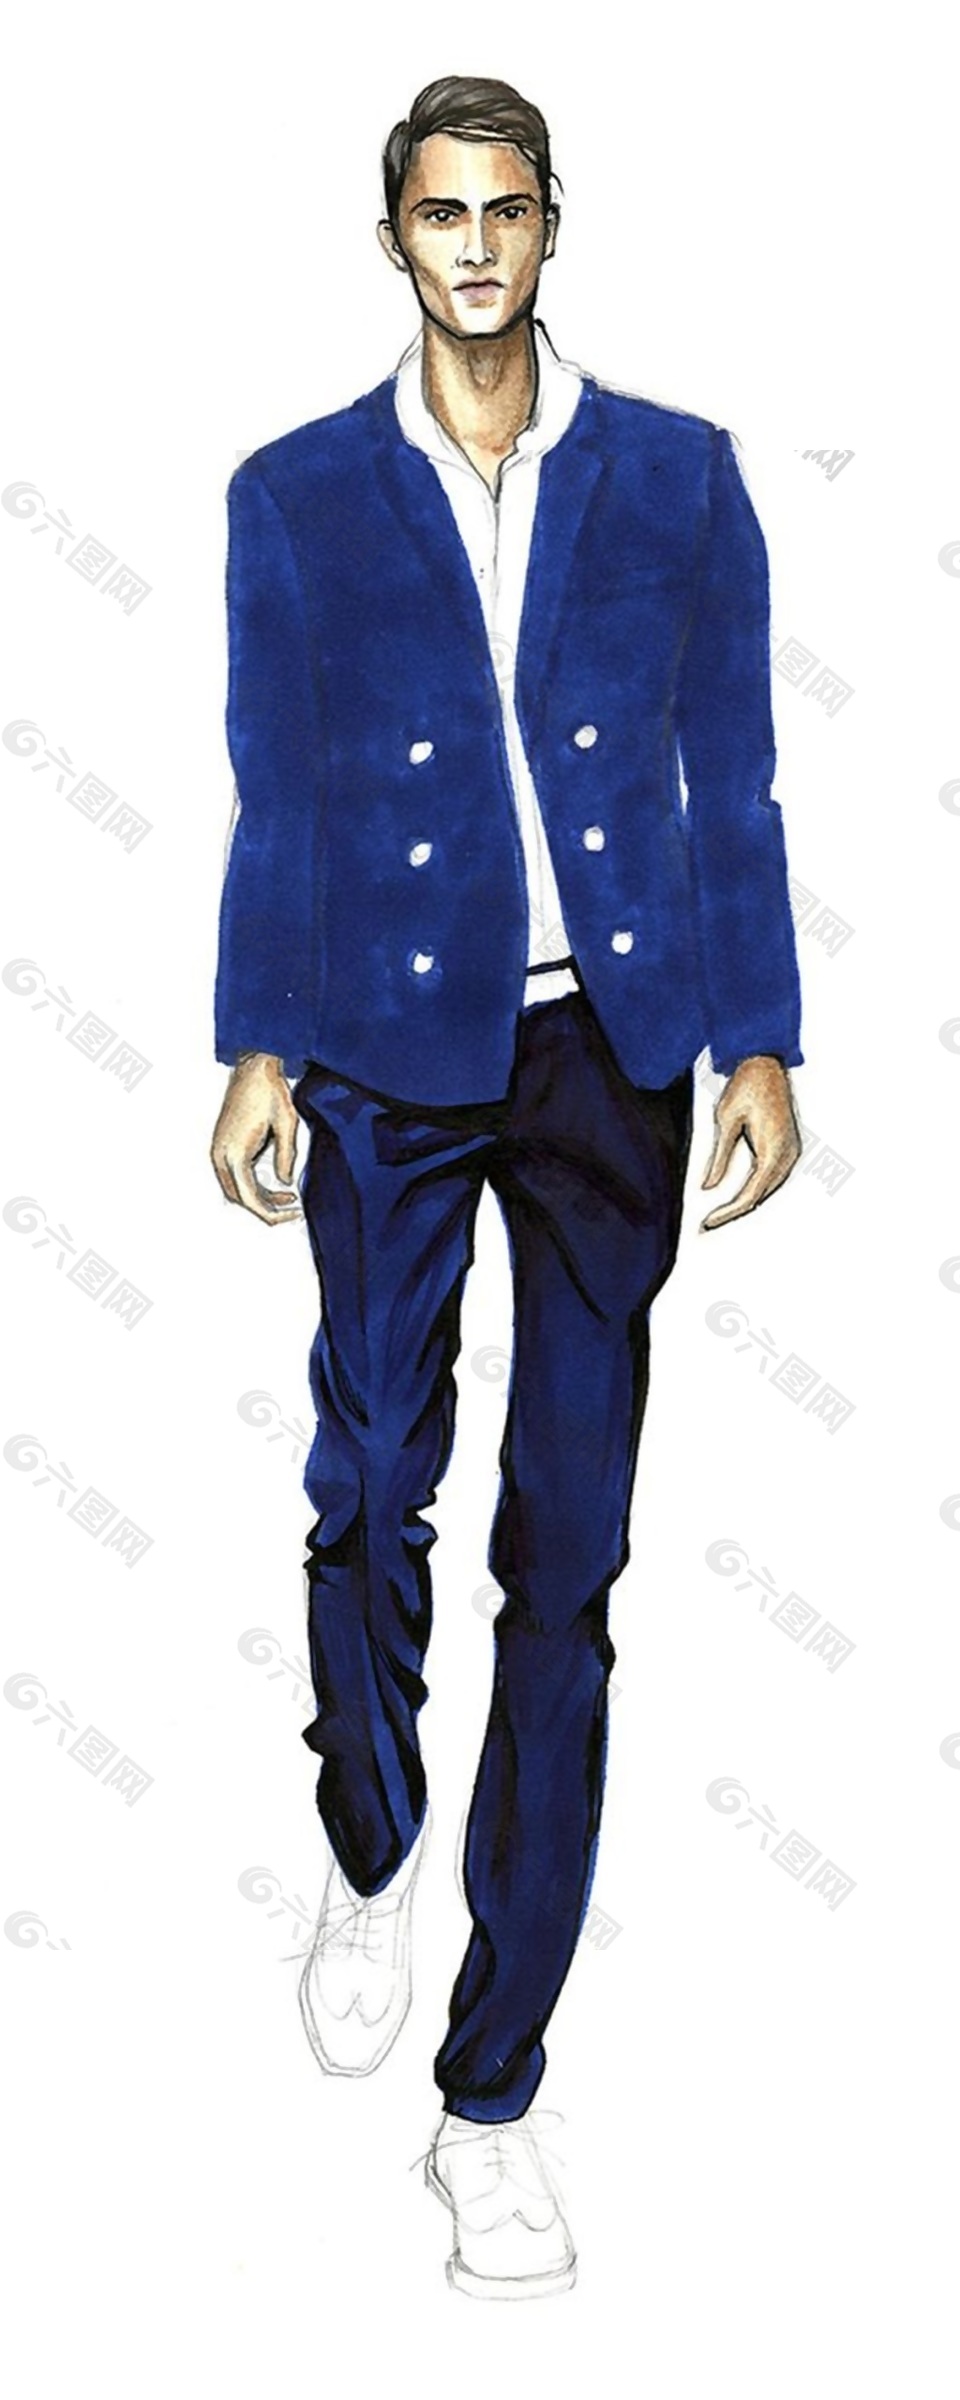 时尚宝蓝色西装外套男装效果图